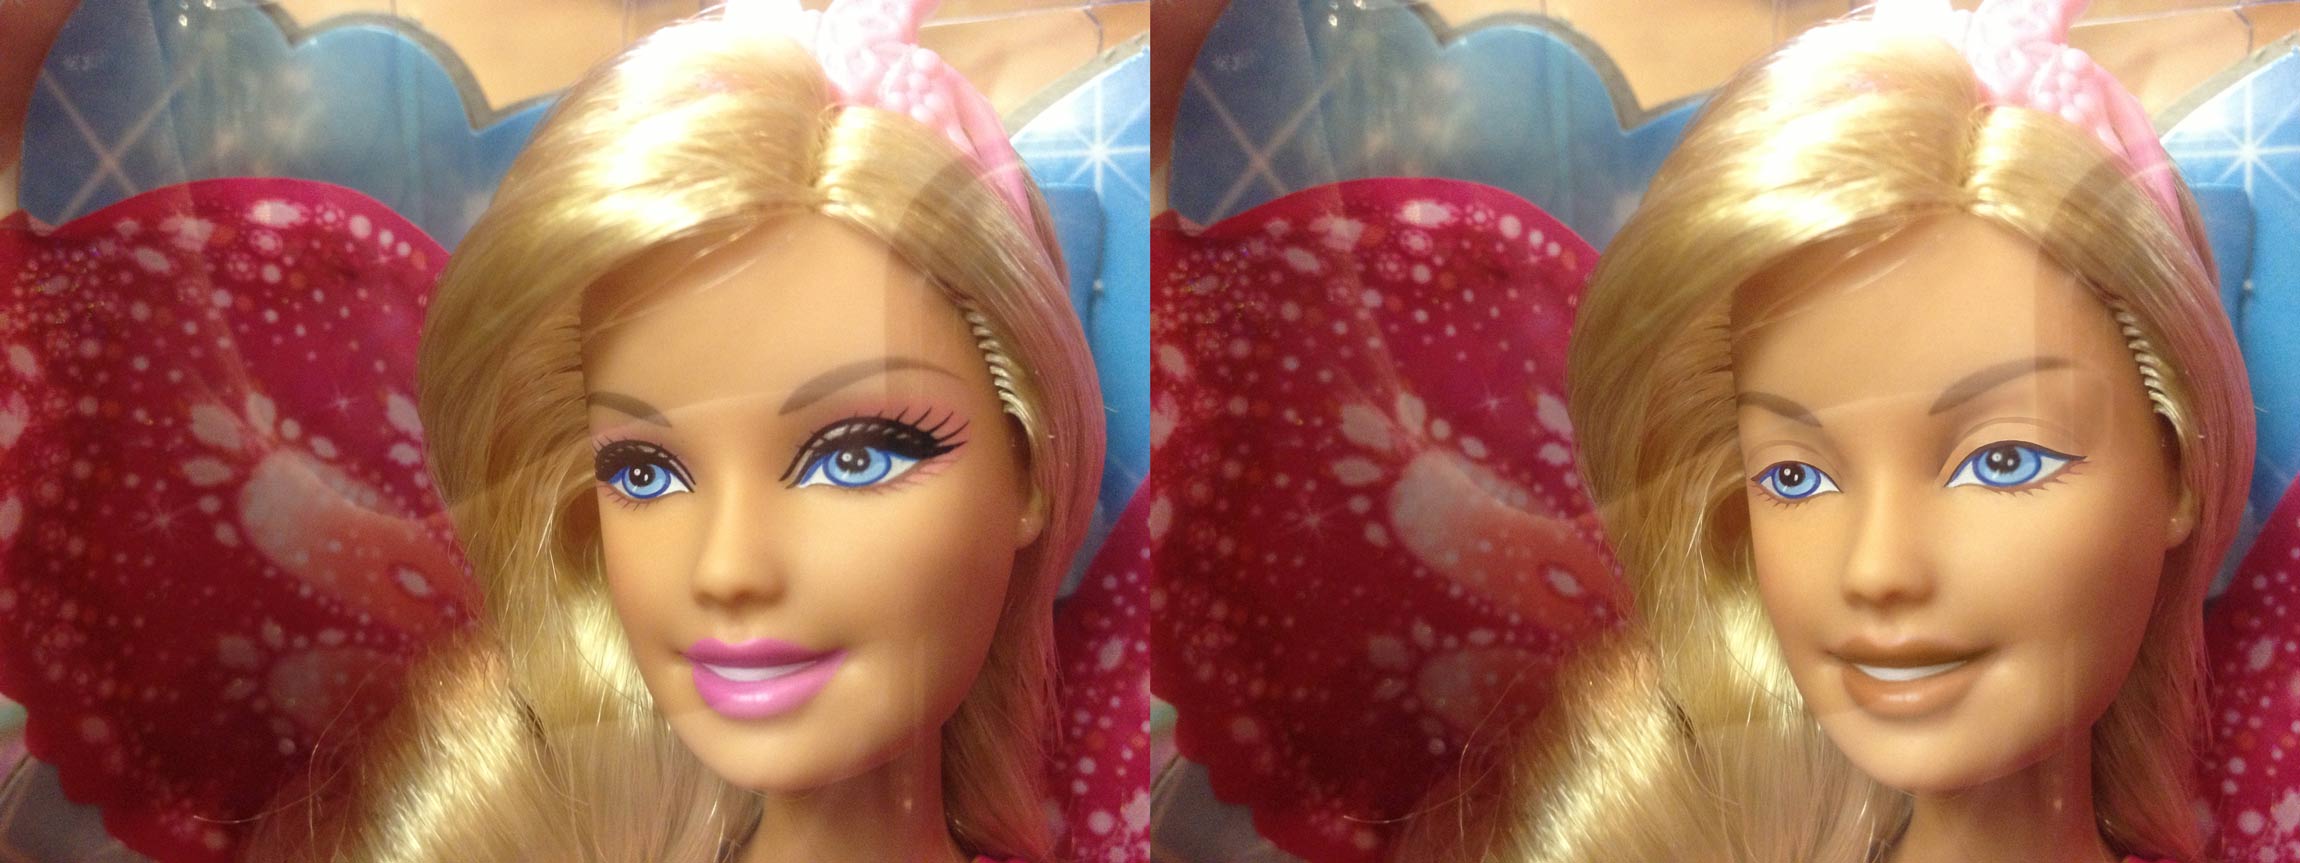 Barbie Bratz And Disney Princess Dolls Without Makeup Nickolay Lamm